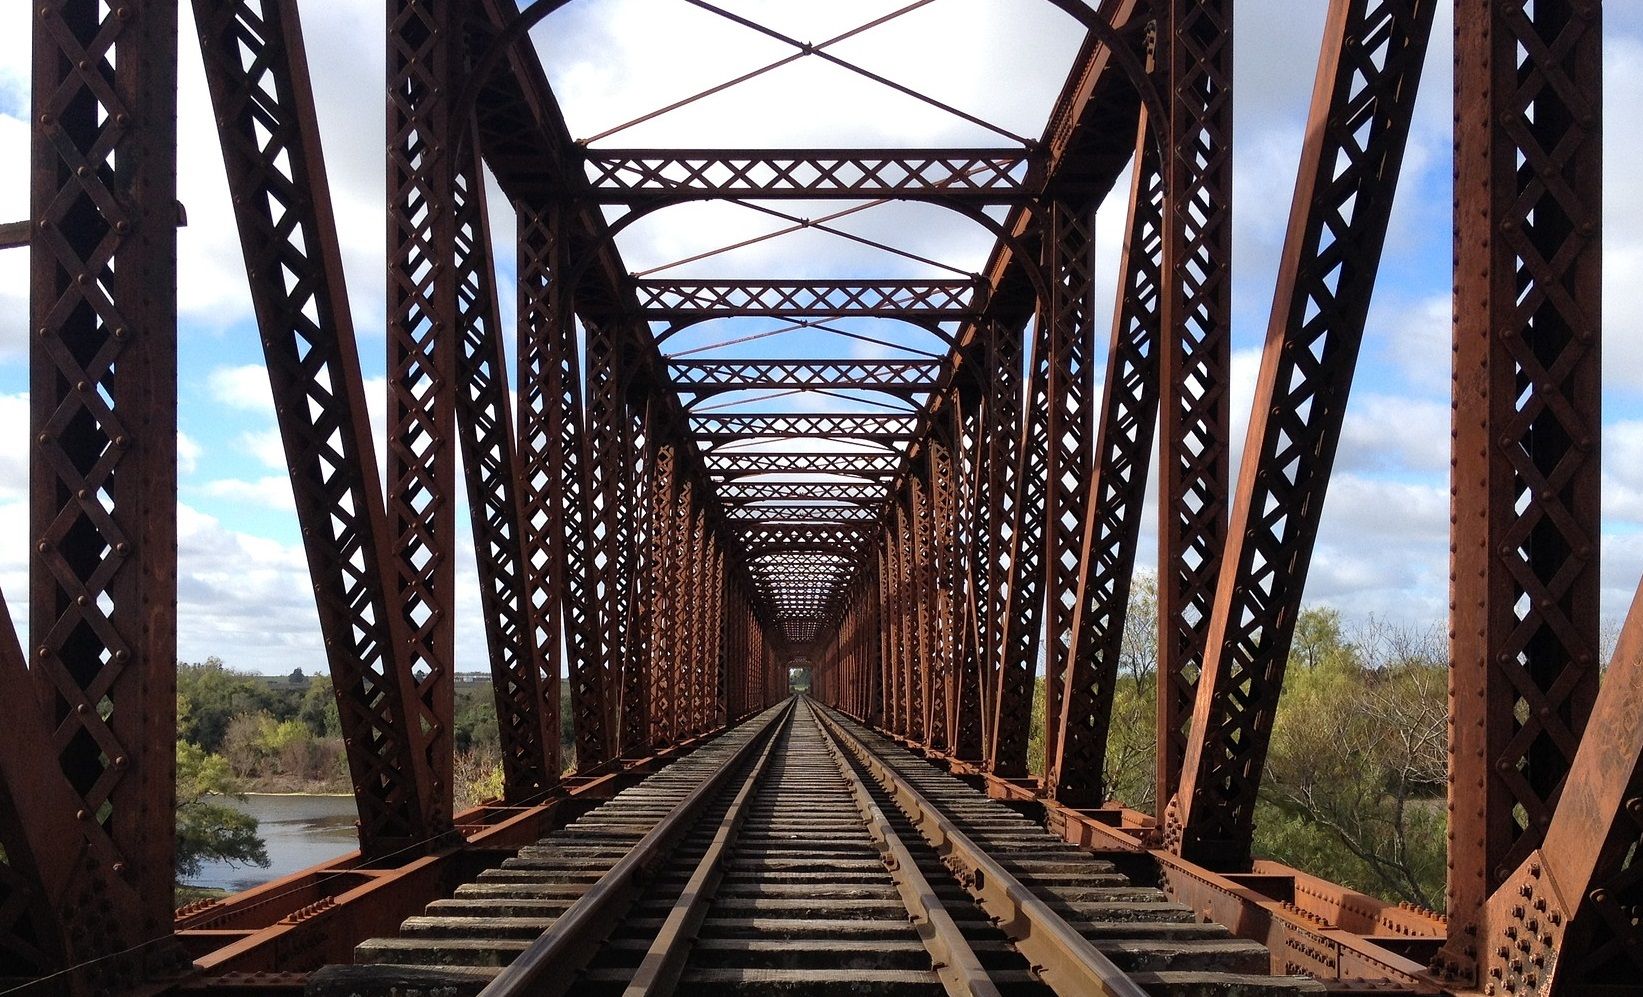 Las vías de un tren sobre un puente de hierro